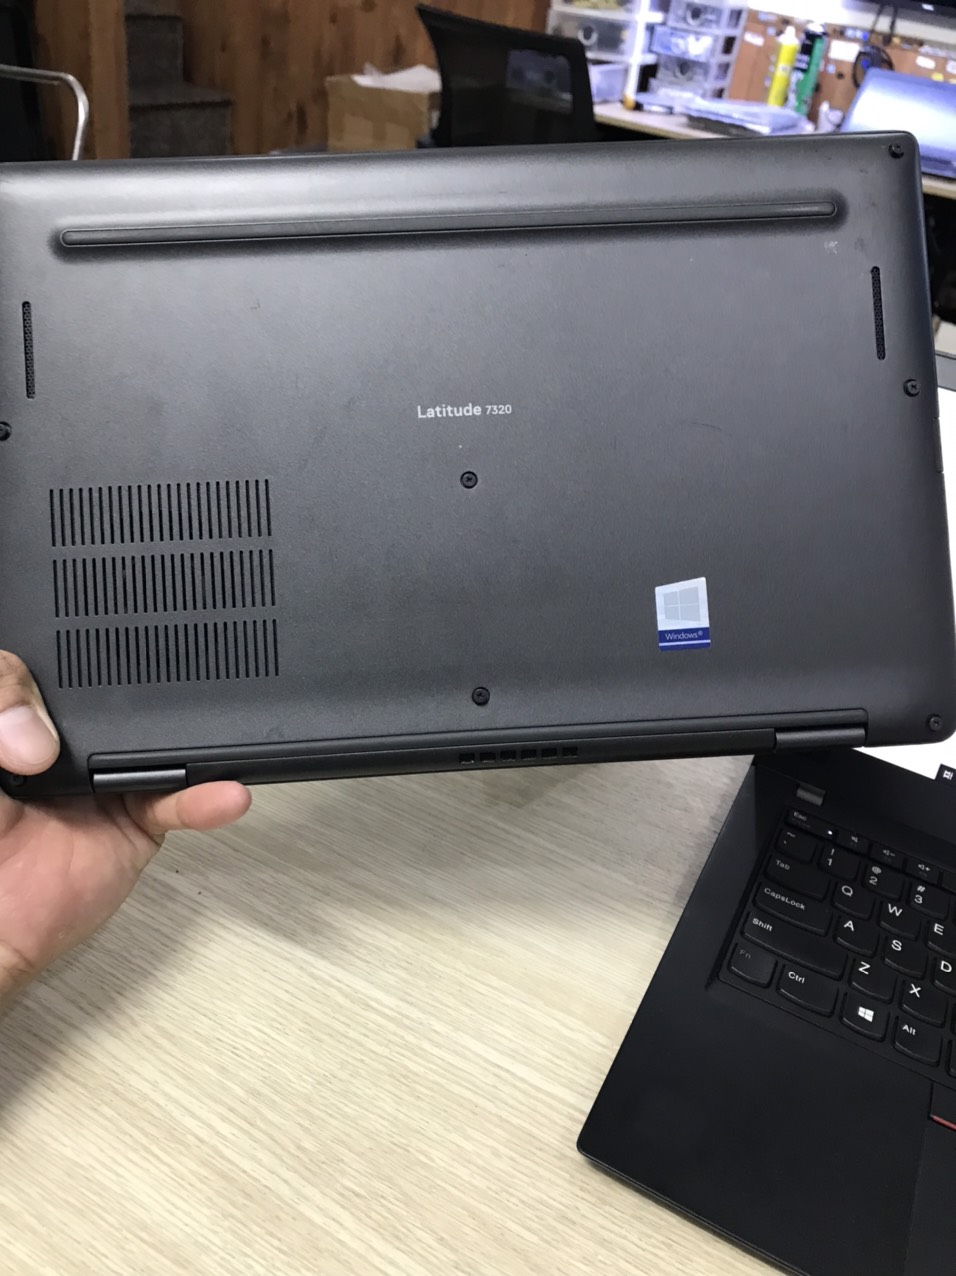 Laptop Dell chính hãng giá rẻ tại Lê Nguyễn PC, cấu hình i5, i7, laptop đồ họa - Ảnh 4